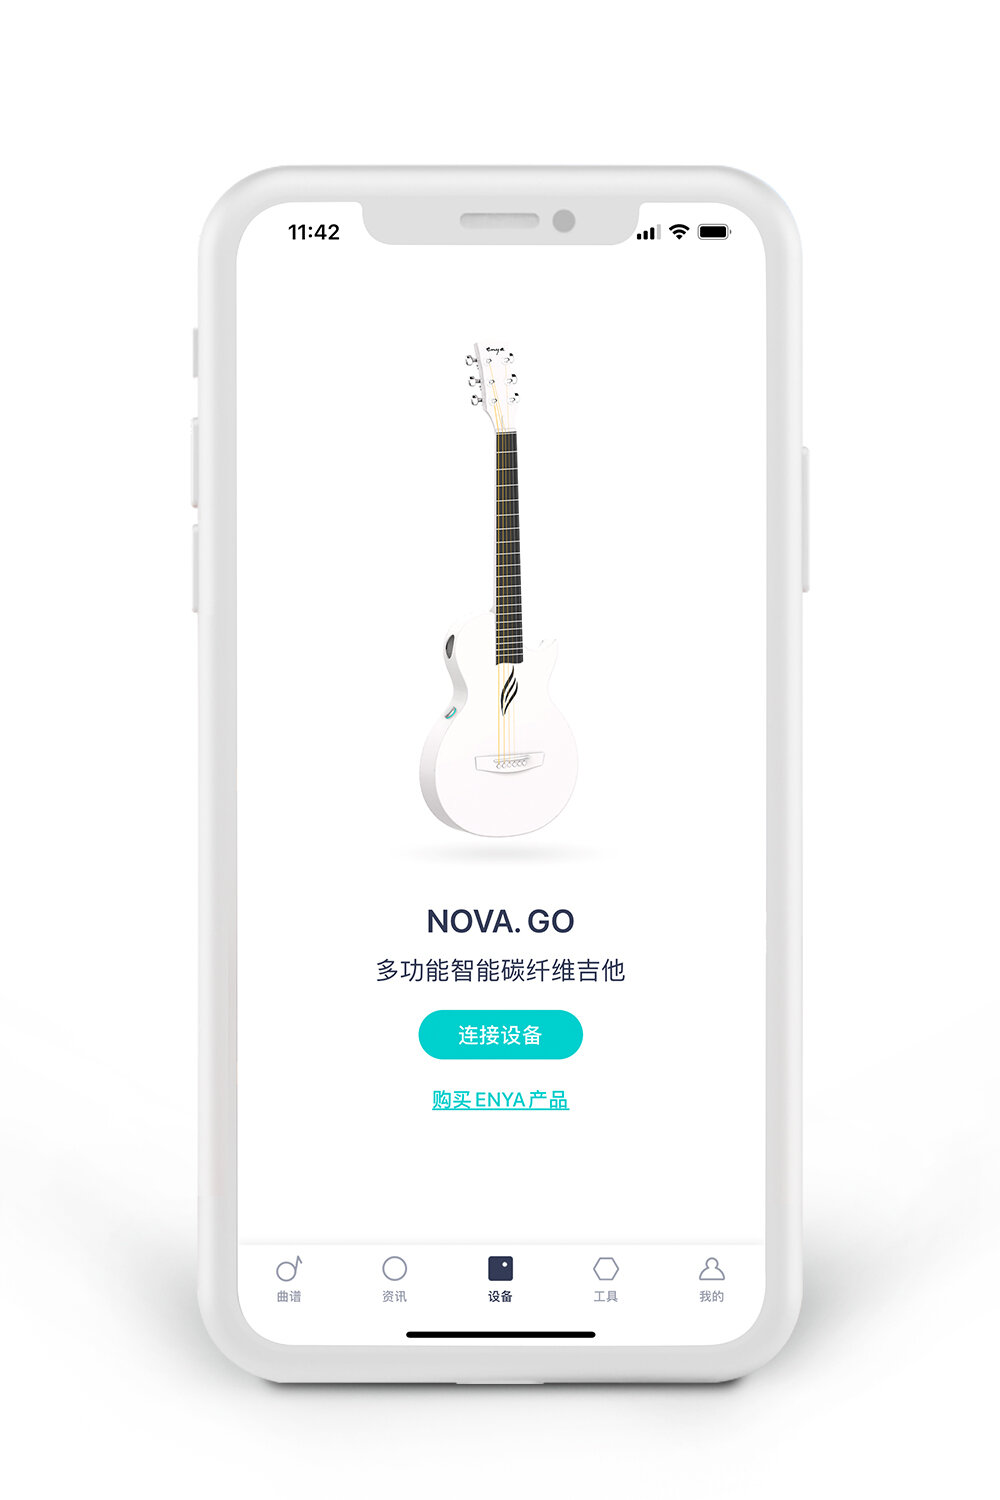 連接你的吉他 - 恩雅音樂APP的一個核心功能是為NOVA GO專門打造的智能創新型音樂軟件，通過藍牙連接你的Nova Go設備，實現對琴體內置加震拾音器的效果調節，解鎖更多實用功能，實現多場景滲透為你的演奏帶來更多的可能性